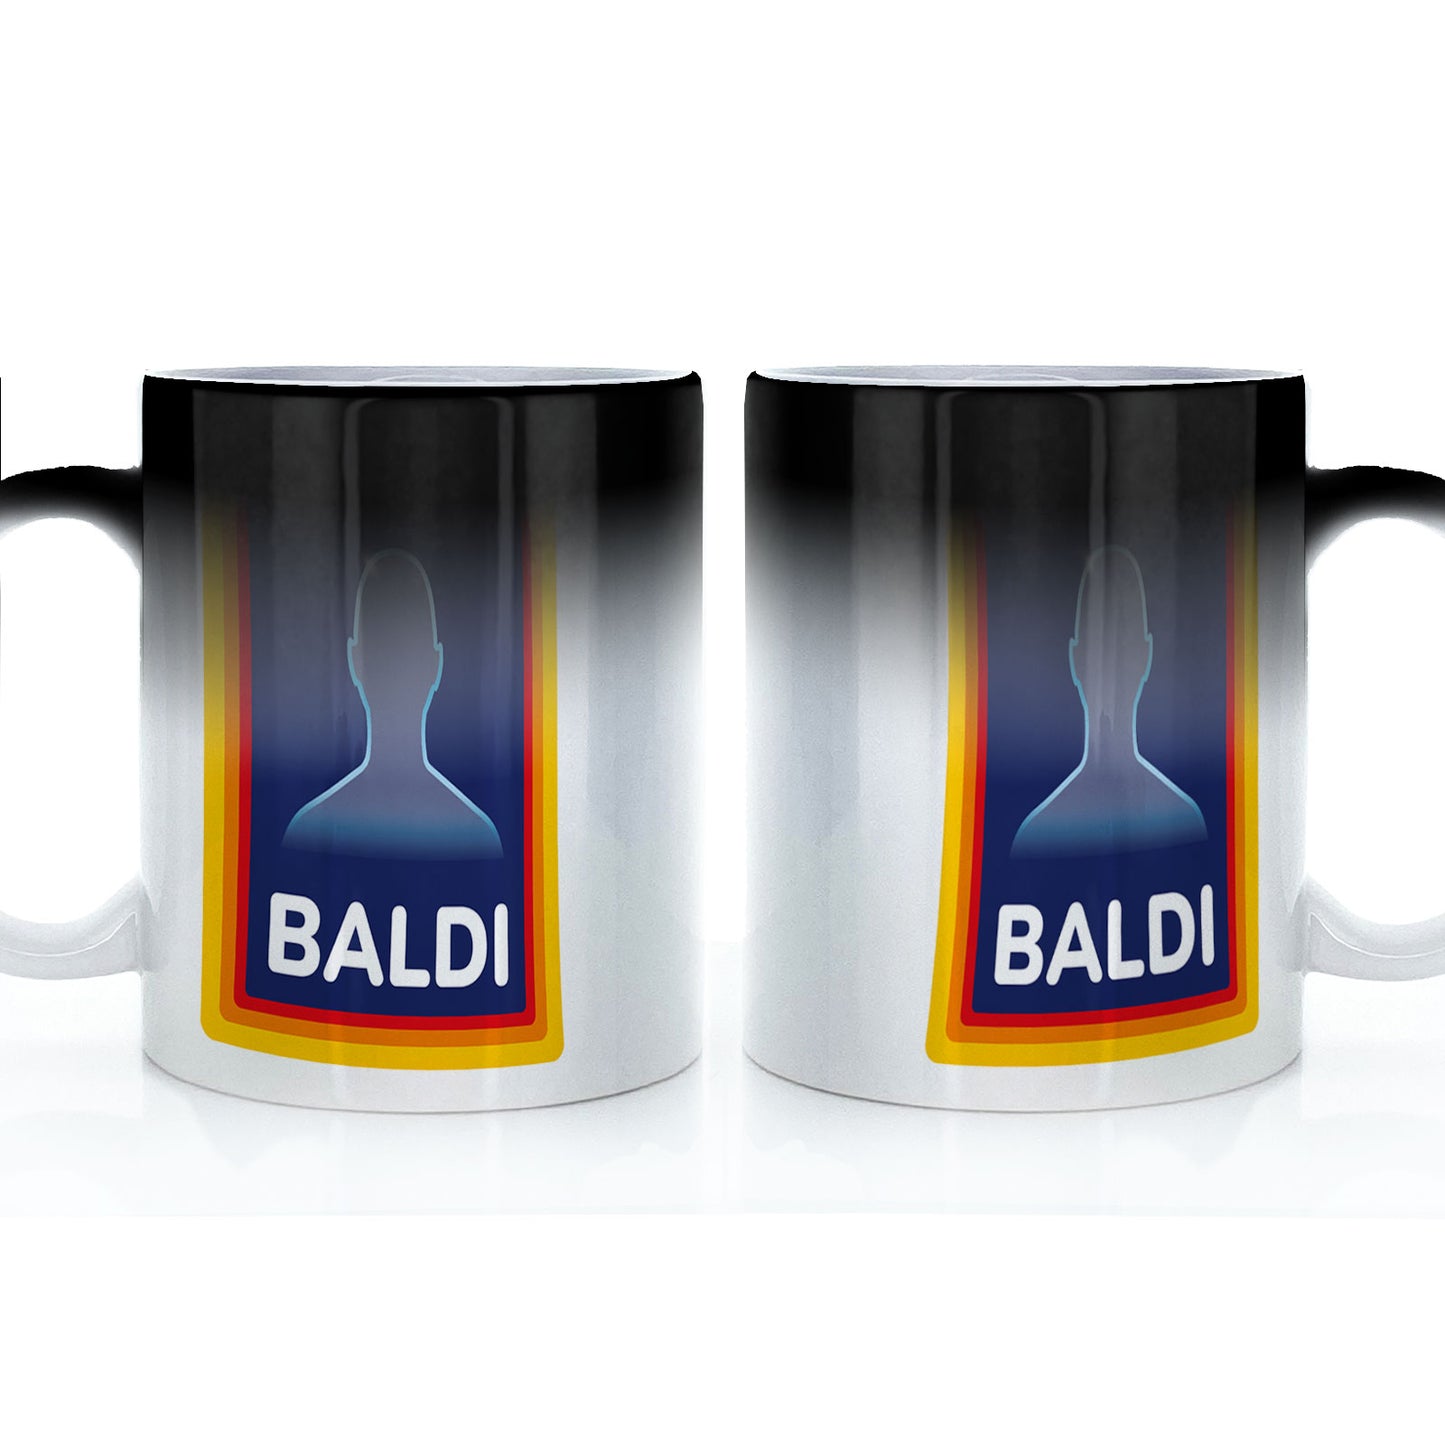 Baldi-Tasse zum Vatertag. Lustige Tasse für baldigen Papa